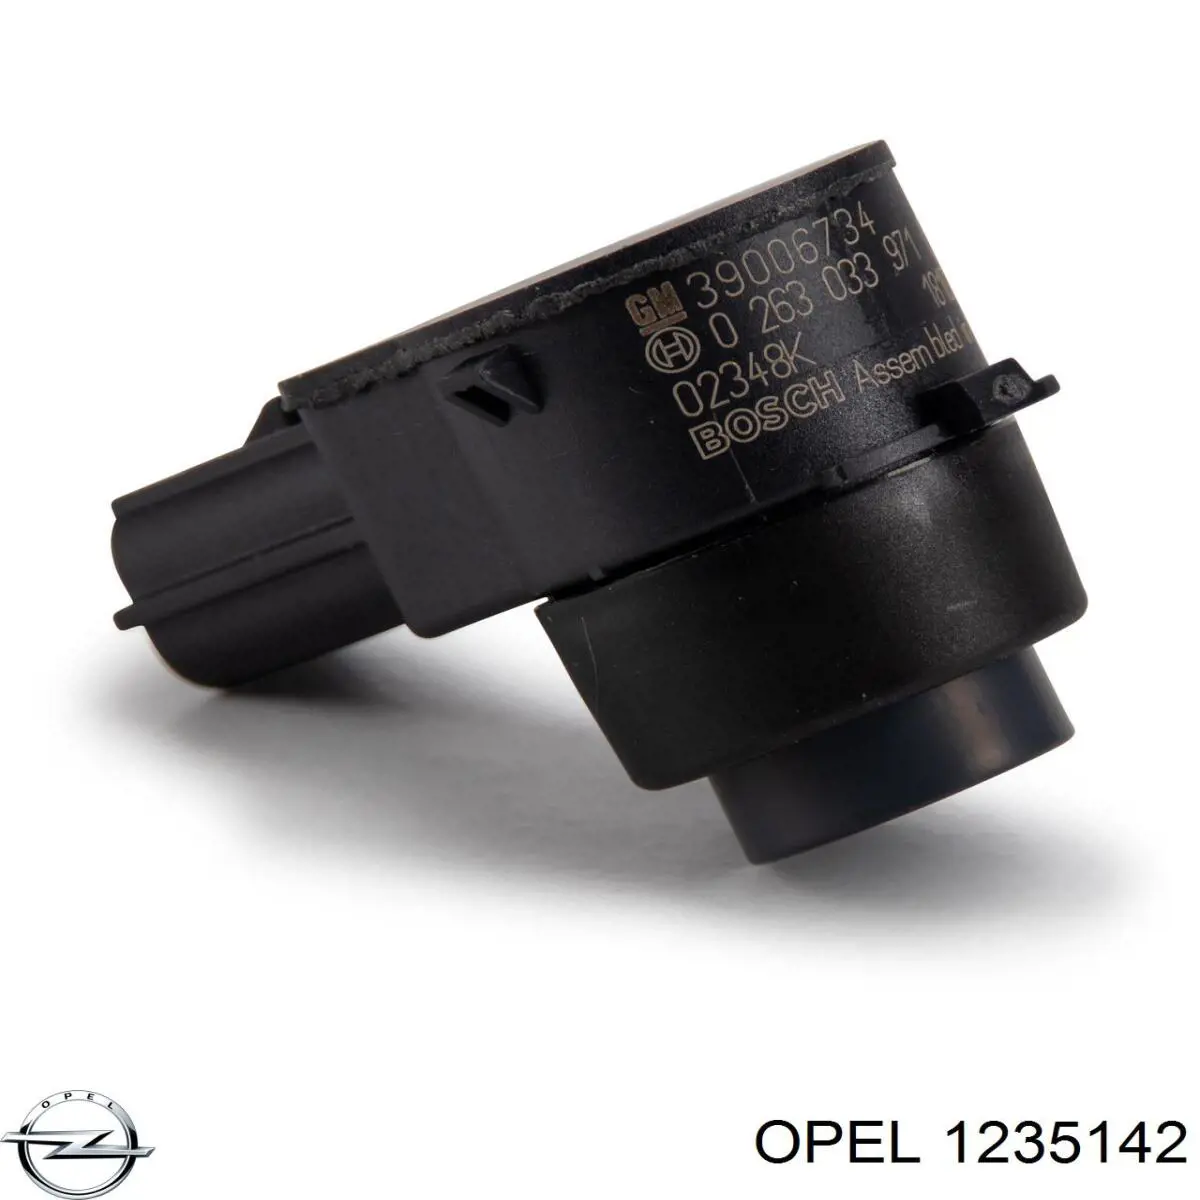 1235142 Opel sensor de aparcamiento trasero